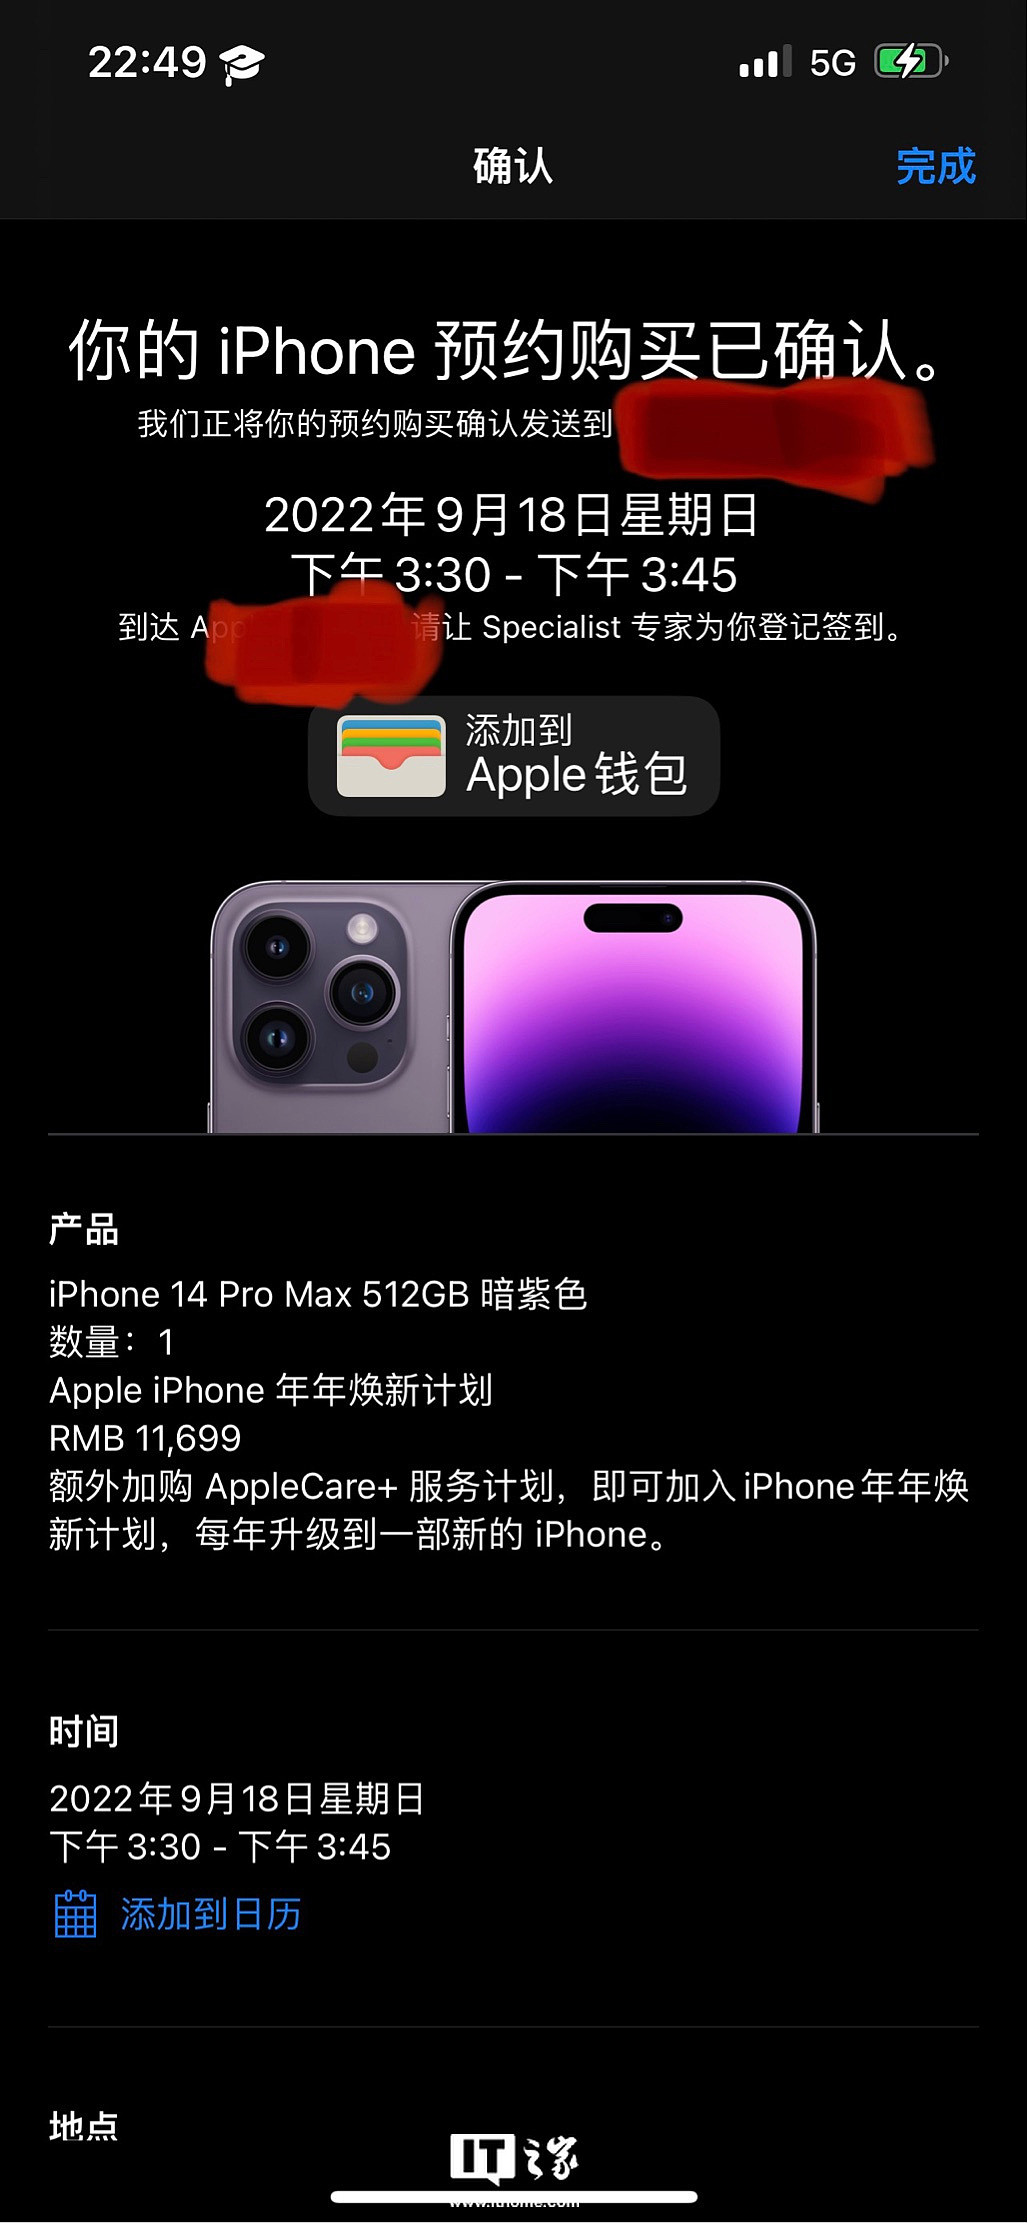 网友反馈苹果 iPhone 14 Pro Max 512GB 暗紫色发货时间提前 - 1